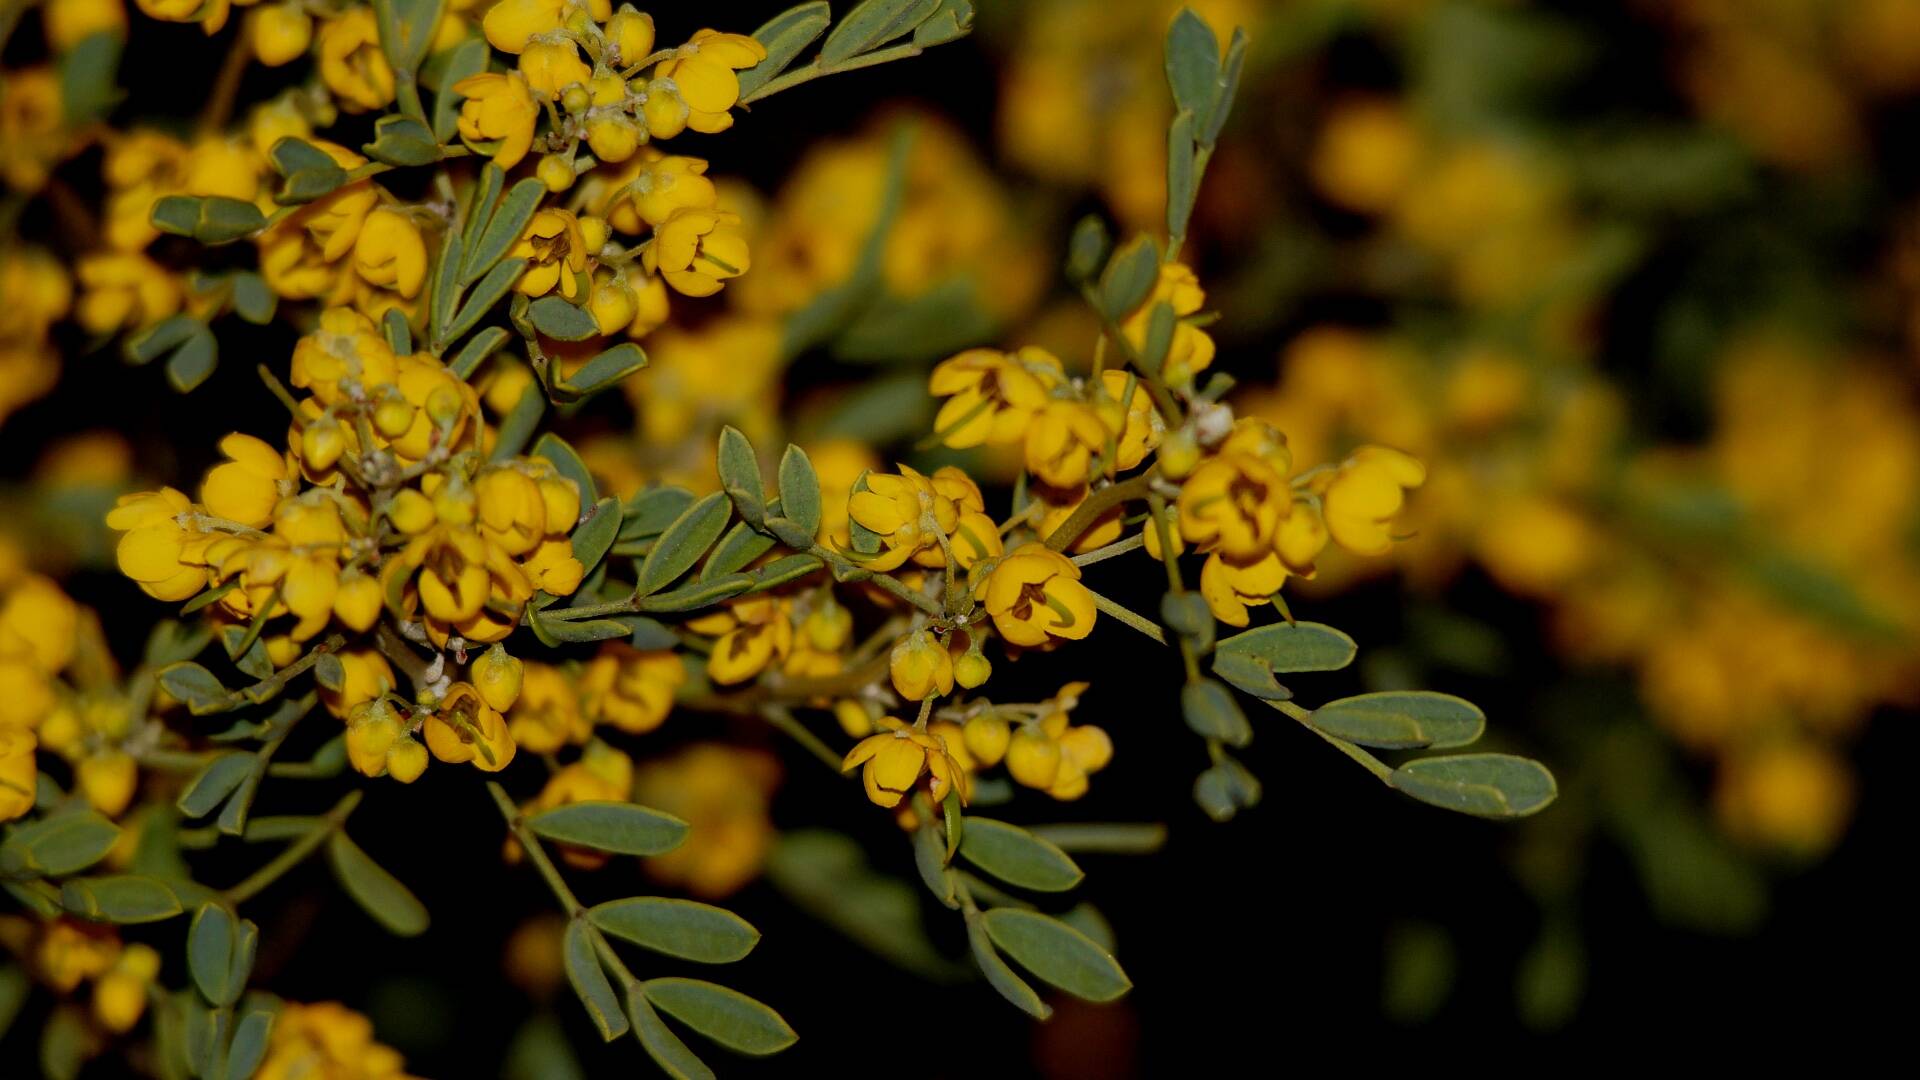 Broad-leaf Desert Senna (Senna artemisioides ssp coriacea)